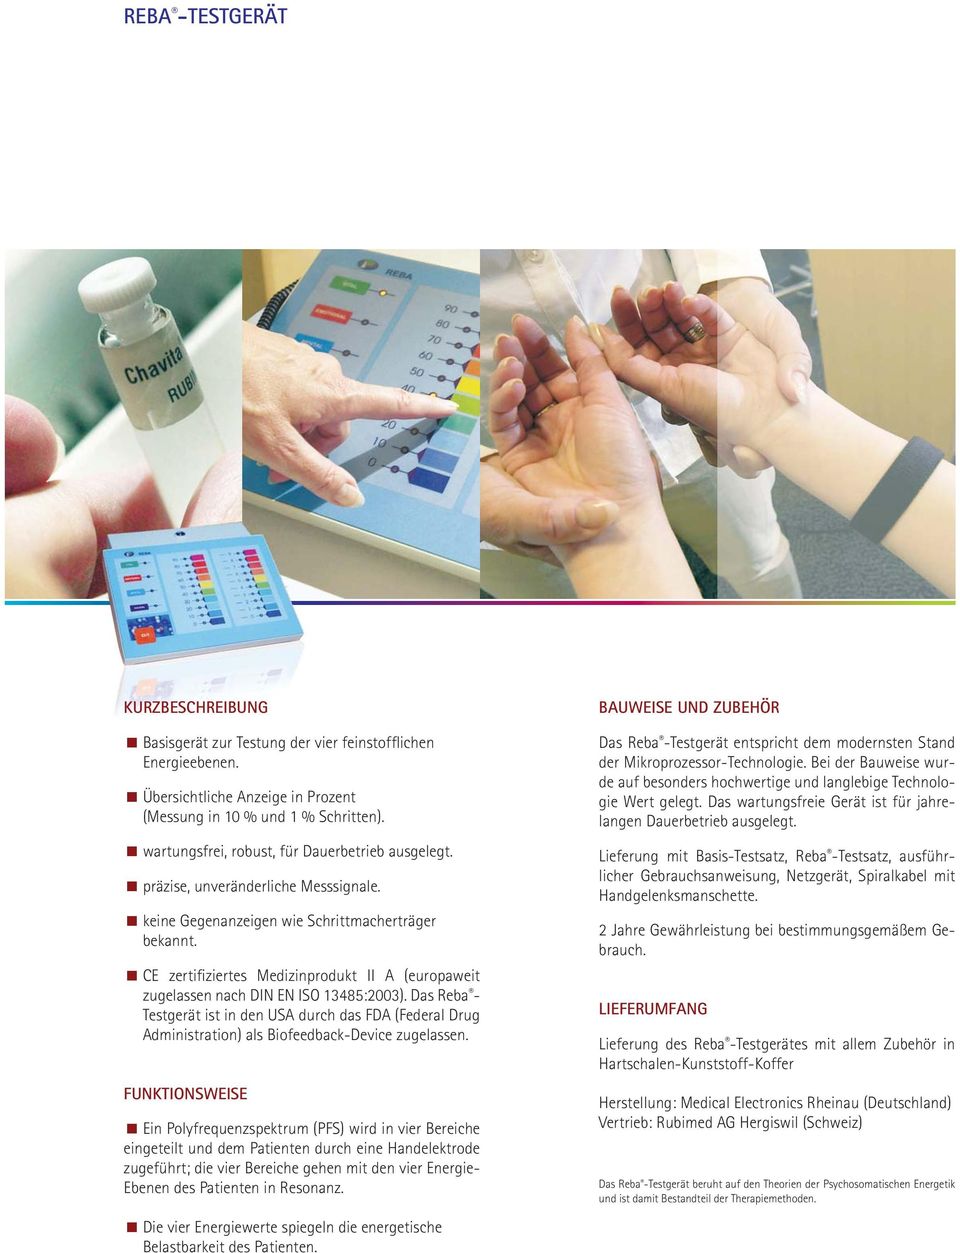 CE zertifiziertes Medizinprodukt II A (europaweit zugelassen nach DIN EN ISO 13485:2003).